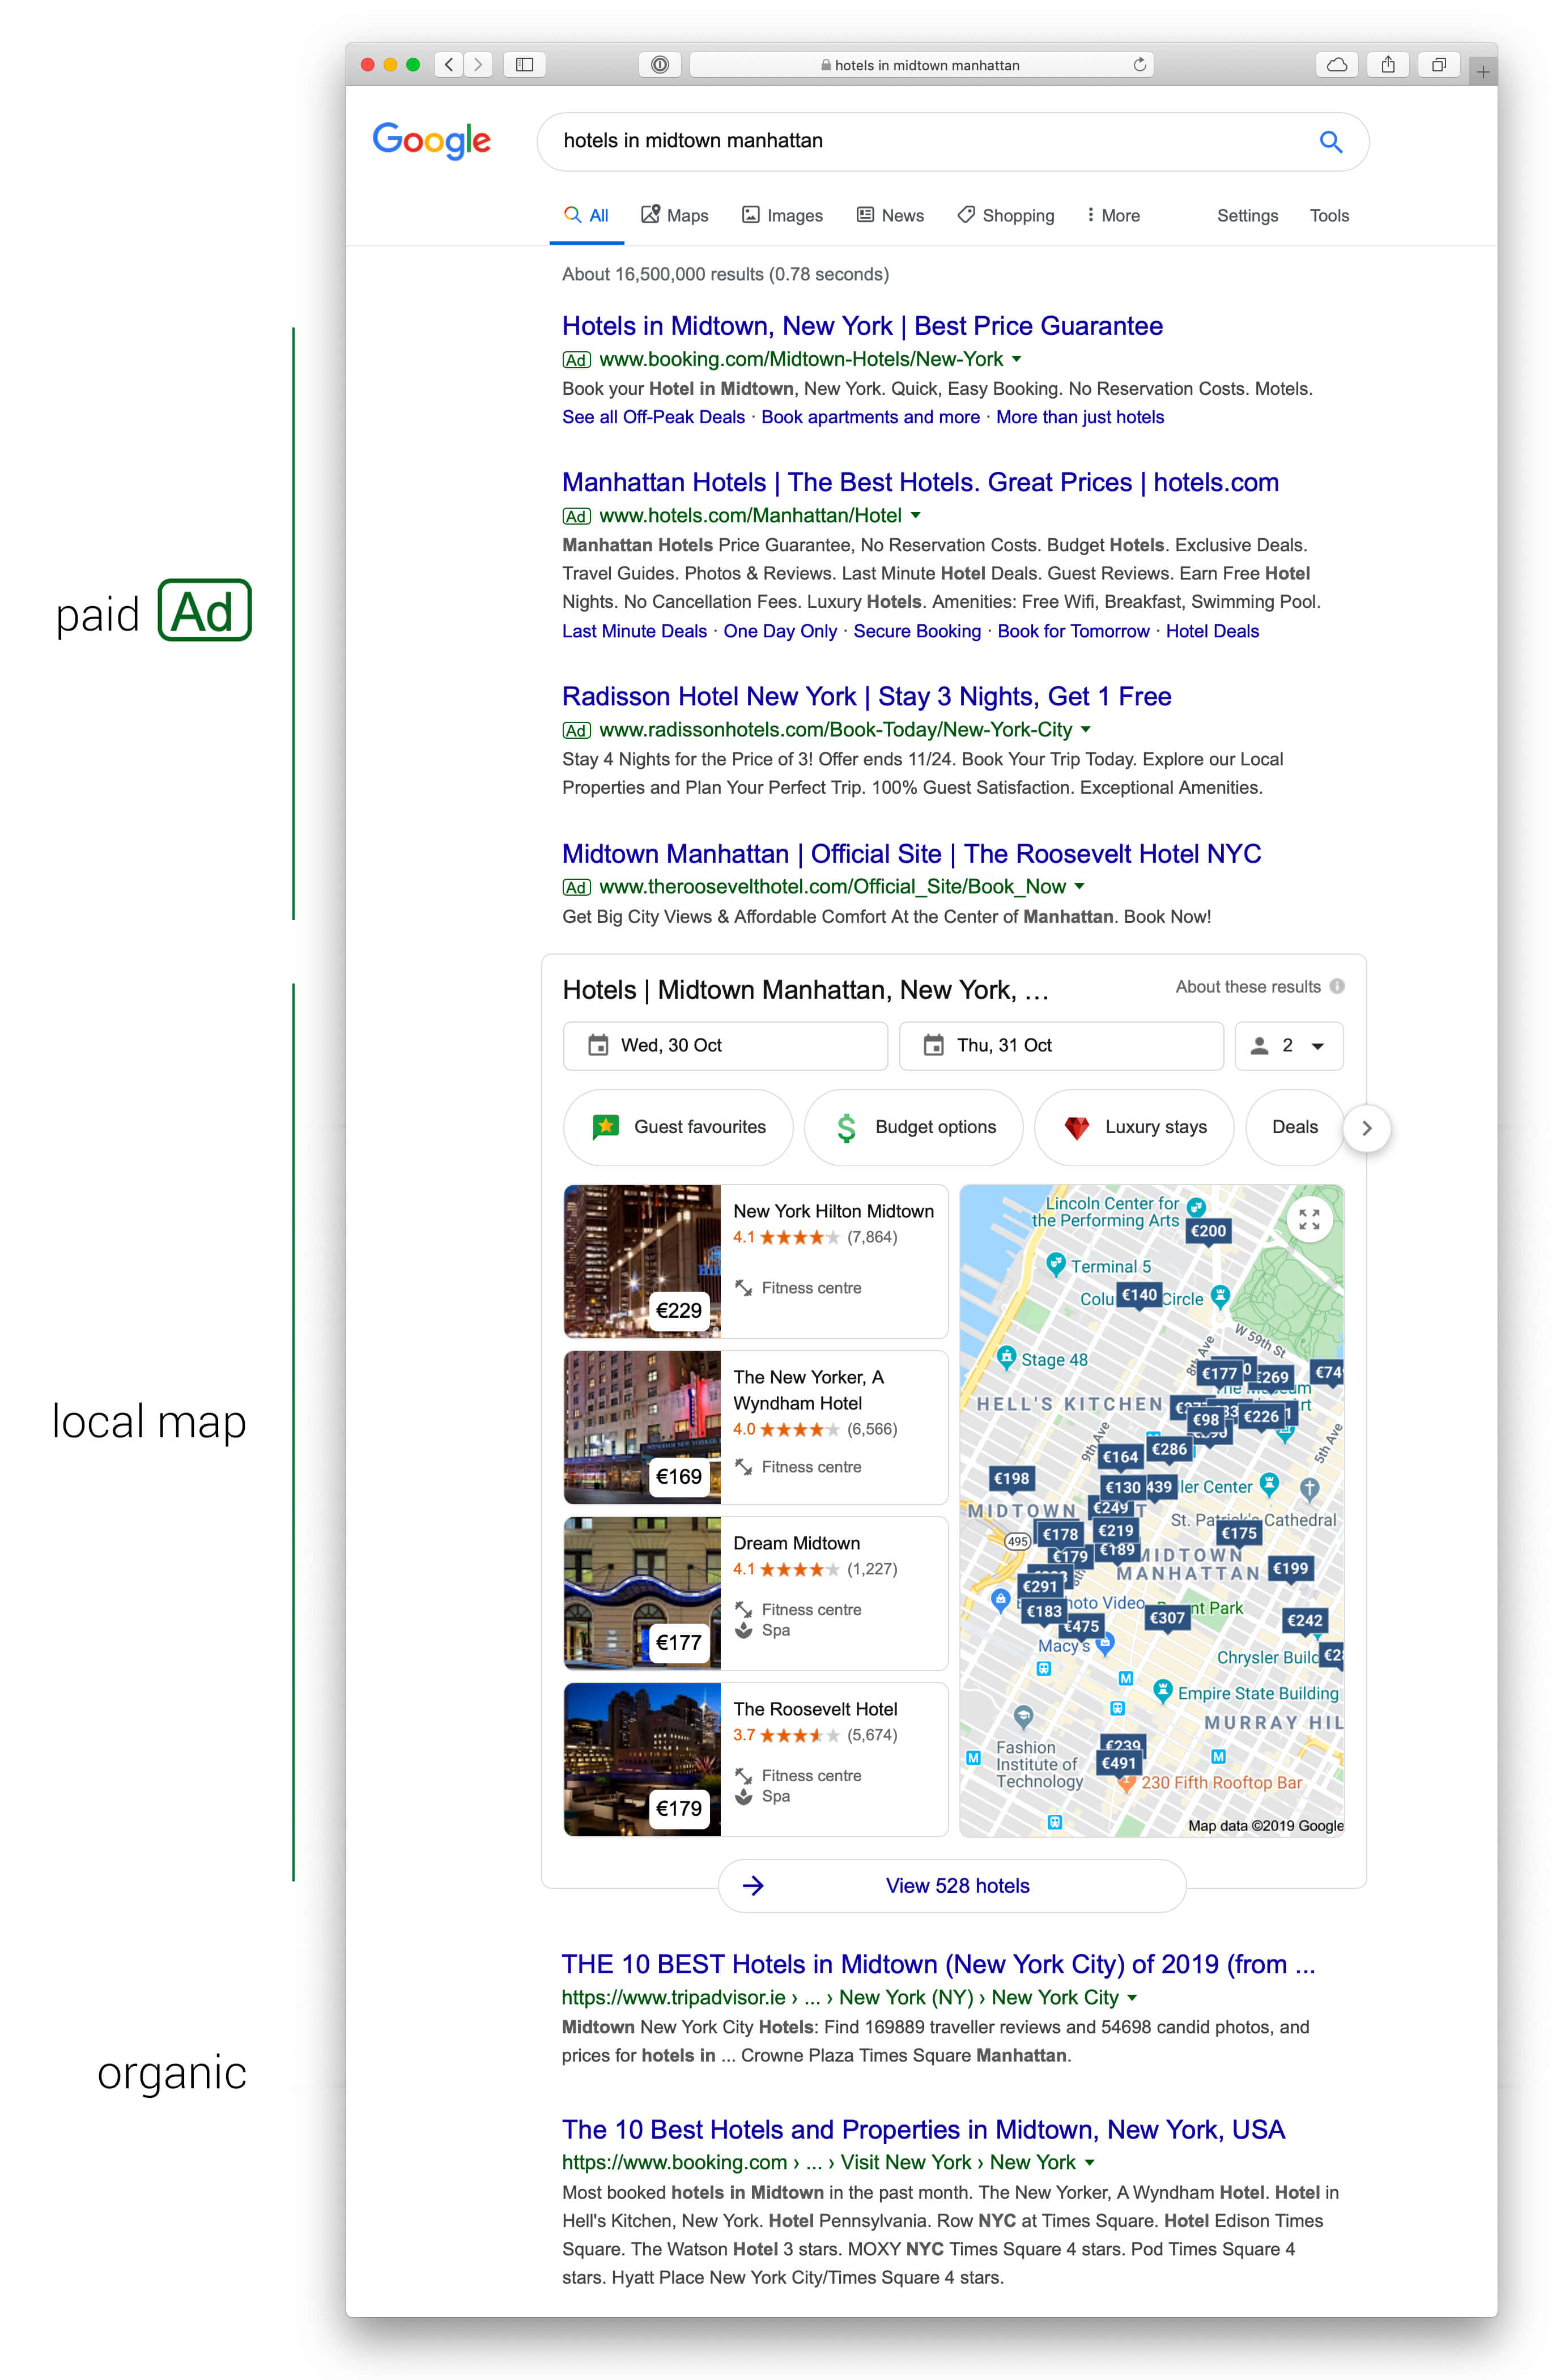 Une recherche d'hôtels au centre de Manhattan affiche des résultats payants aux quatre premières places, puis les résultats sur la carte. Les résultats de recherche organique apparaissent plus bas sur la page.